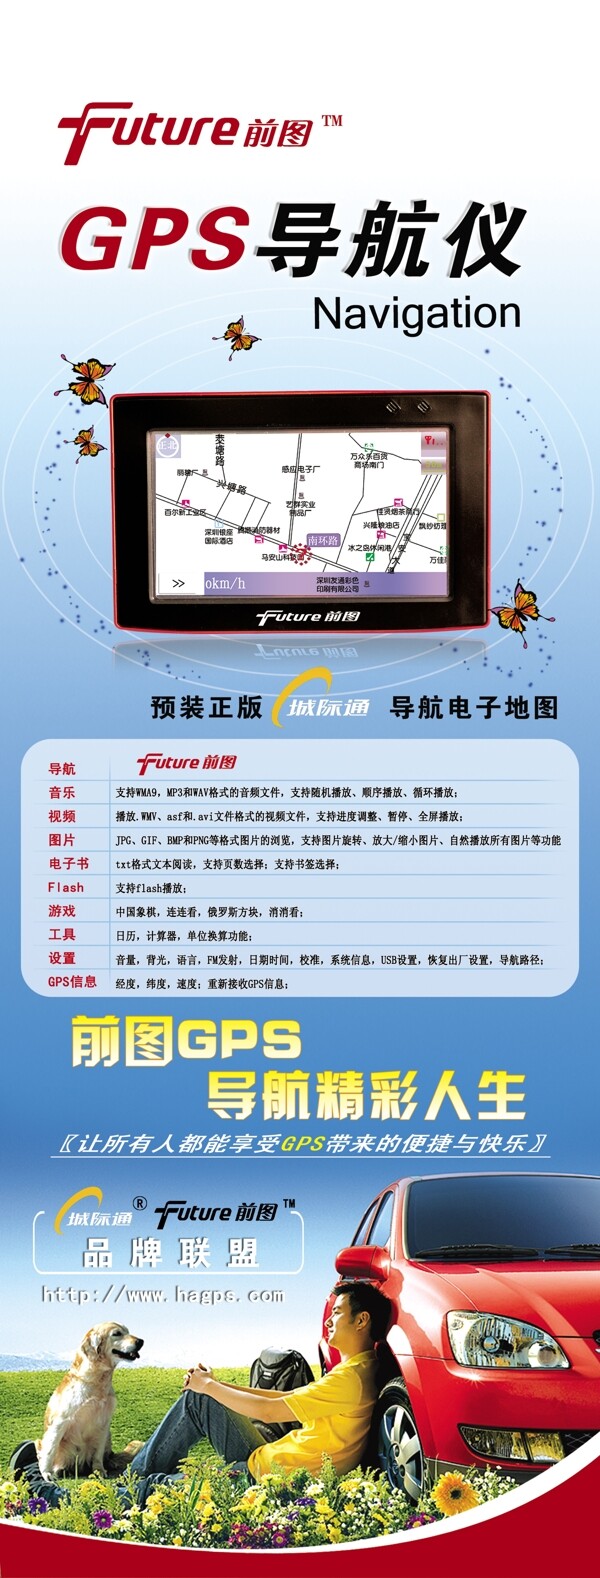 gps导航仪产品介绍x展架